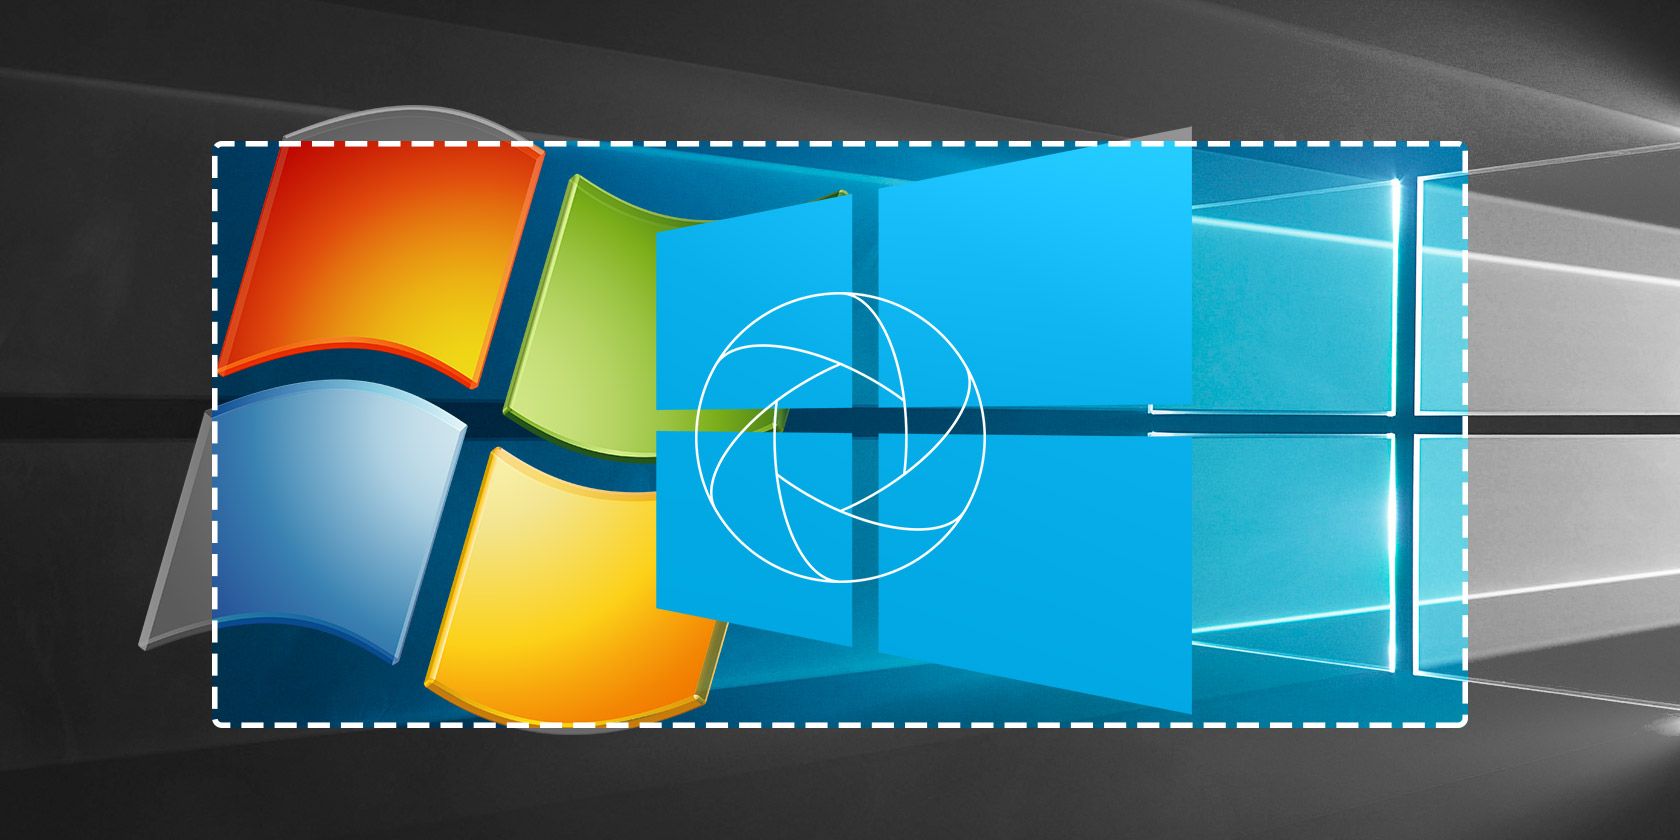 windows 8 official screenshot